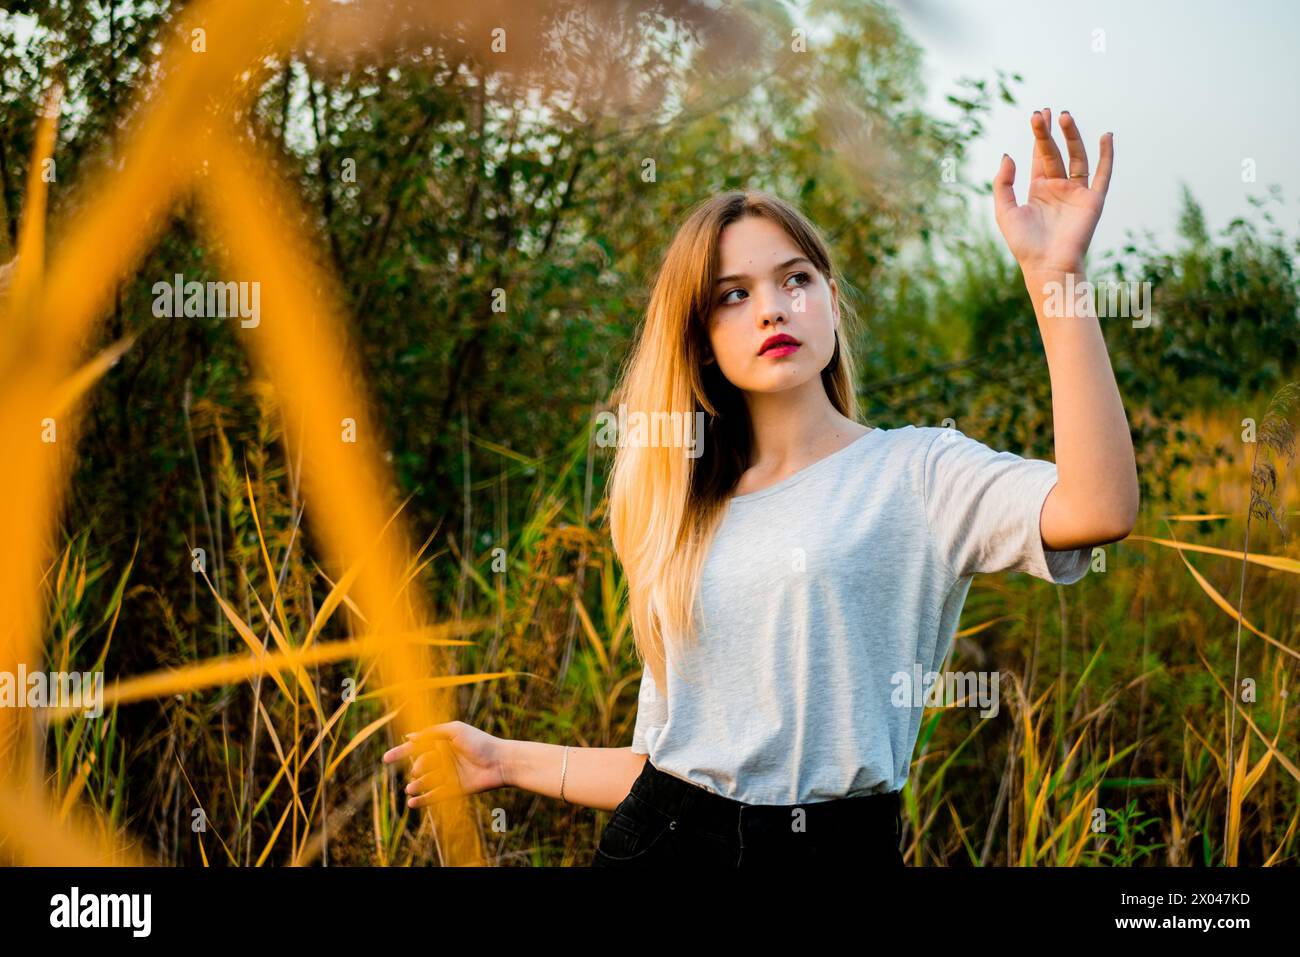 Belle jeune fille portant un t-shirt gris vierge et un Jean noir posant contre l'herbe haute verte et jaune au début de l'automne chaud. Banque D'Images